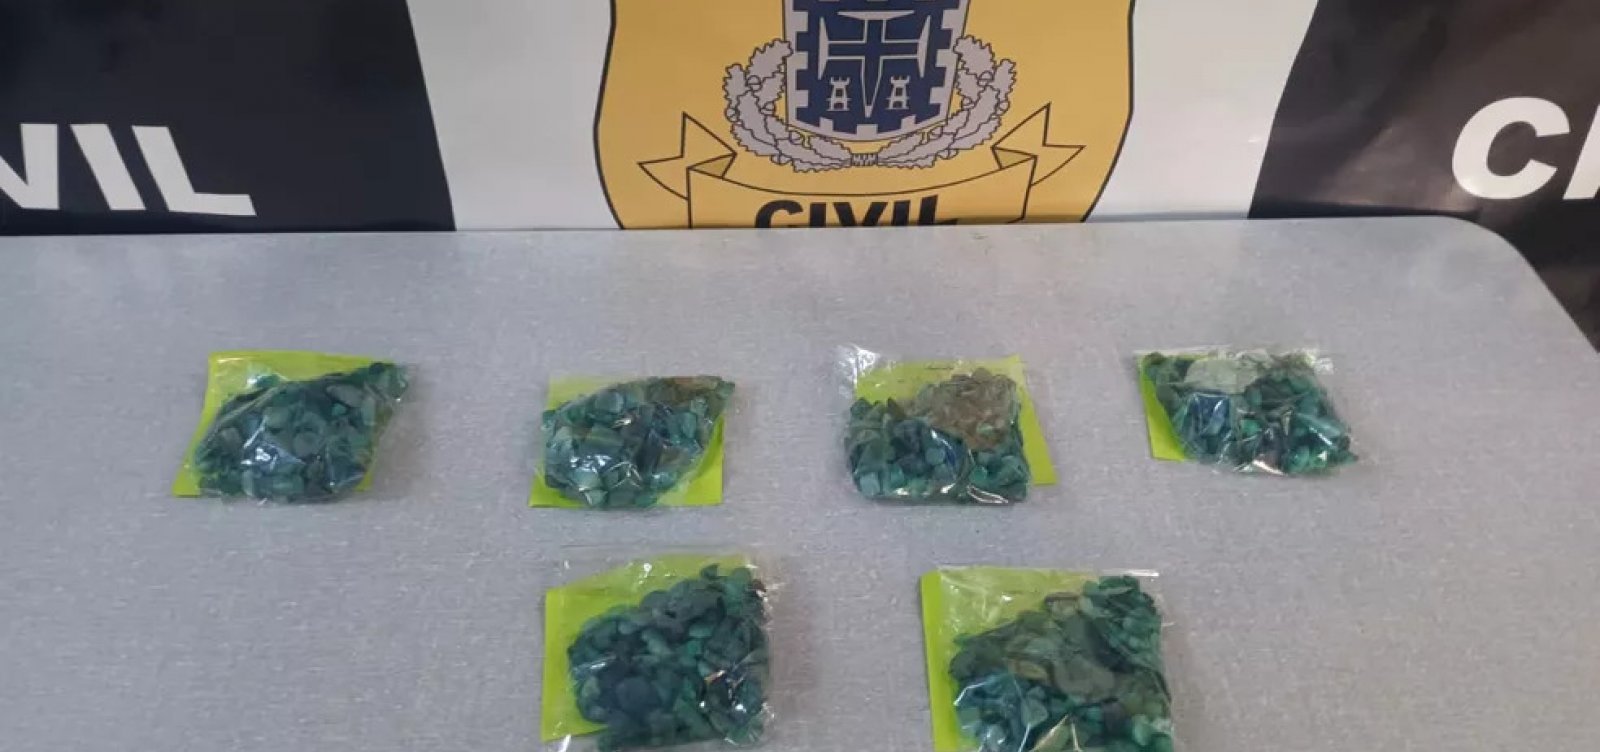 Polícia apreende mais de mil pedras de esmeralda em operação no norte do estado